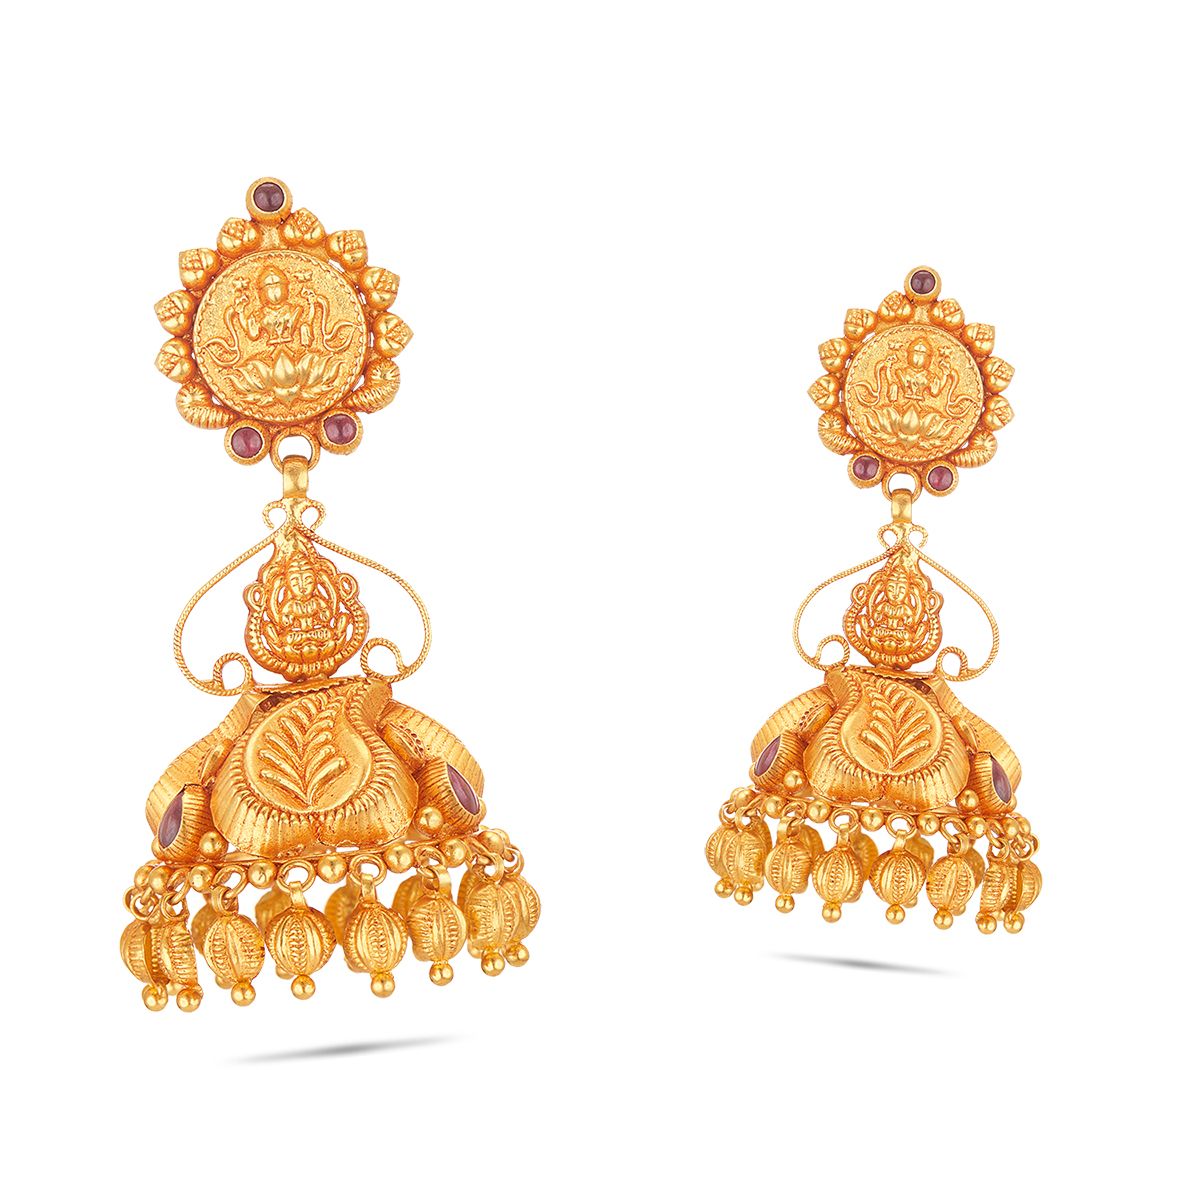 Buy 22k Yellow Gold Earrings Dangle Jhumka Earring Indian Jewelry, 22k Gold  Earrings for Women Wedding Gift Online in India - Etsy